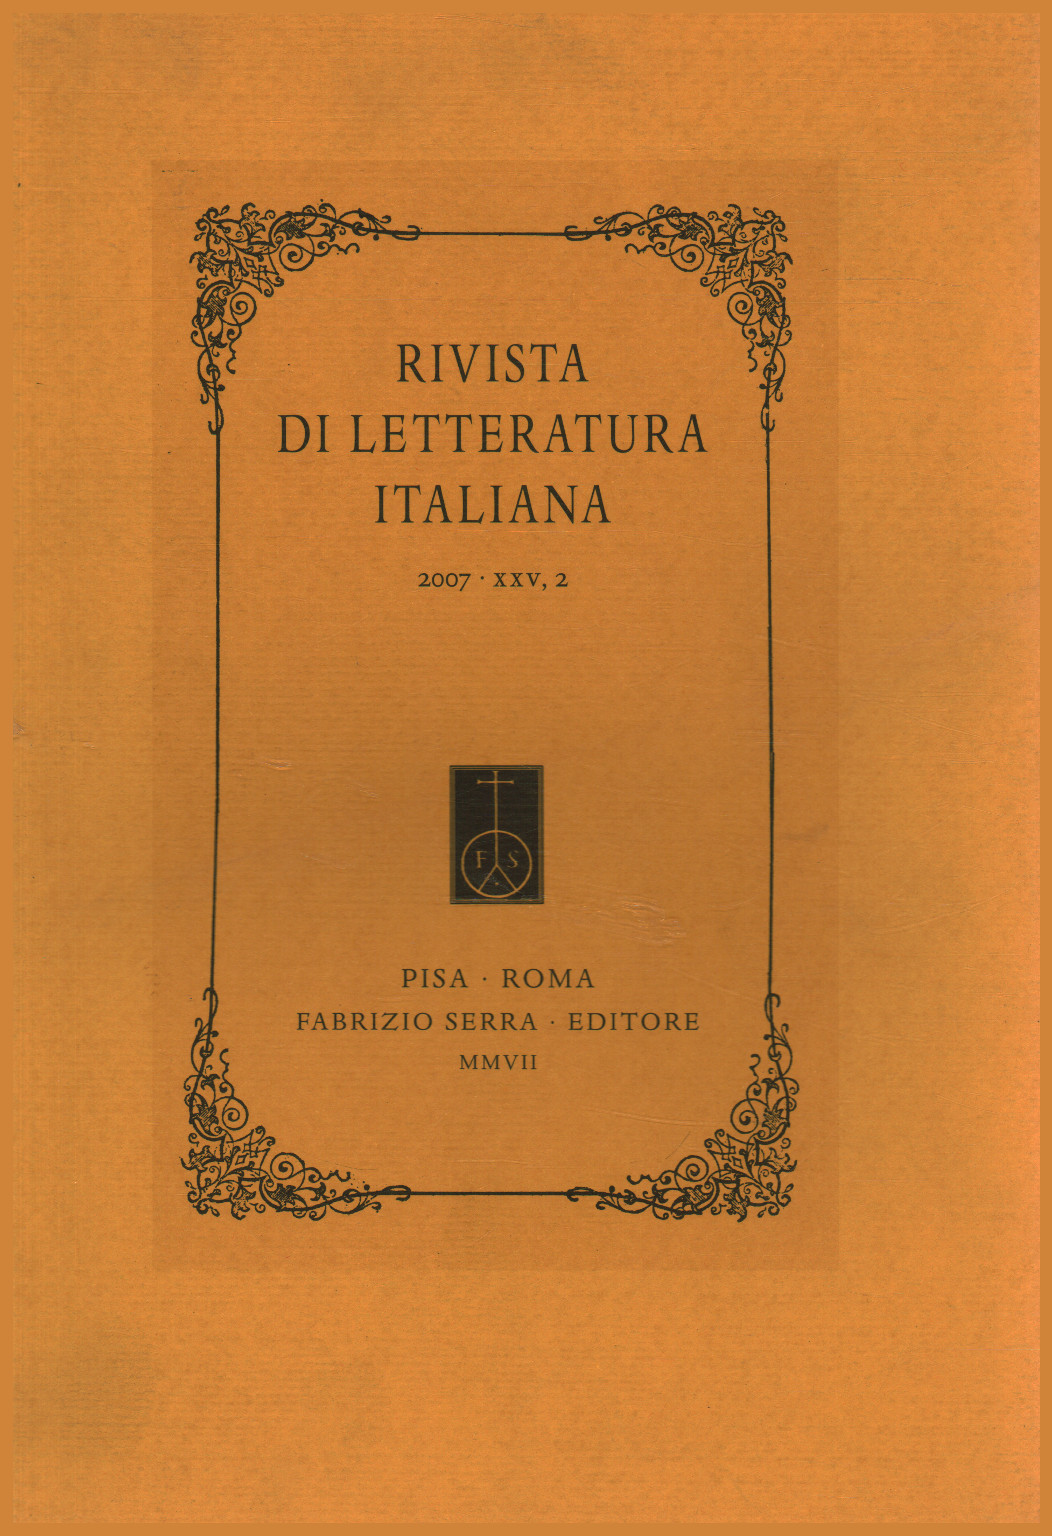 Zeitschrift für italienische literatur 2007,XXV,2, s.zu.